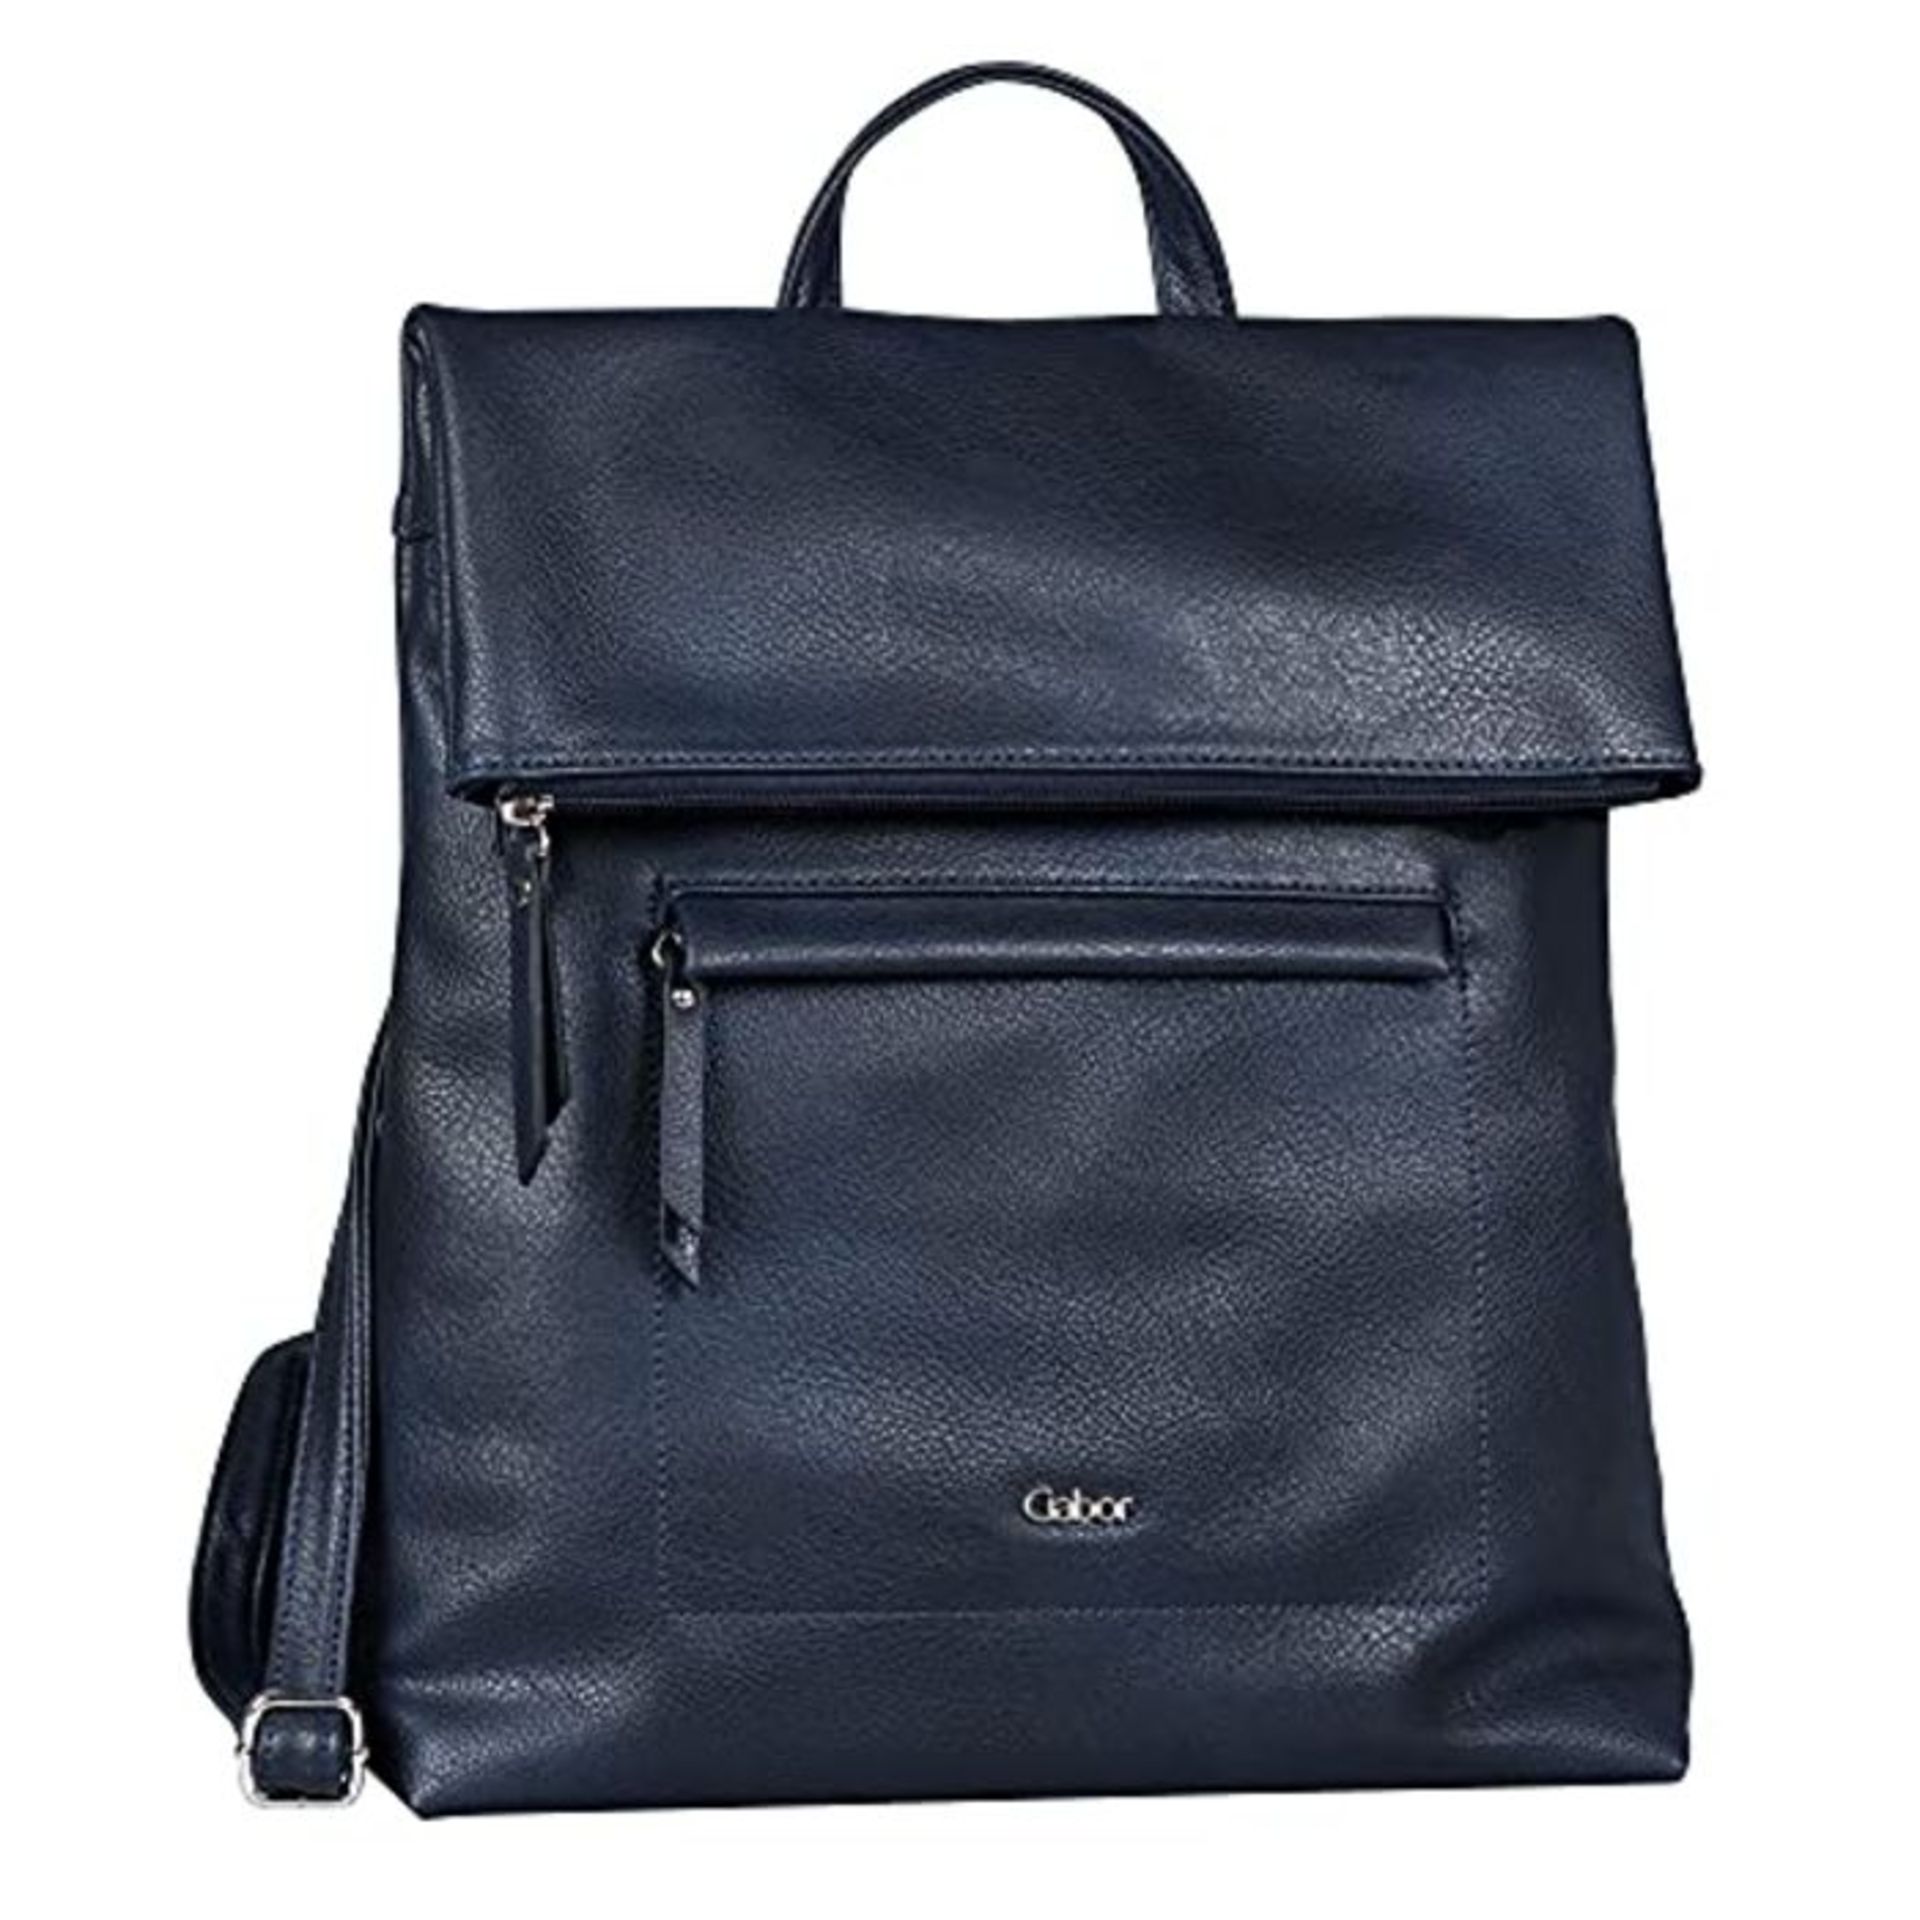 Gabor Mina Backpack Handbag Blue Size: One Size